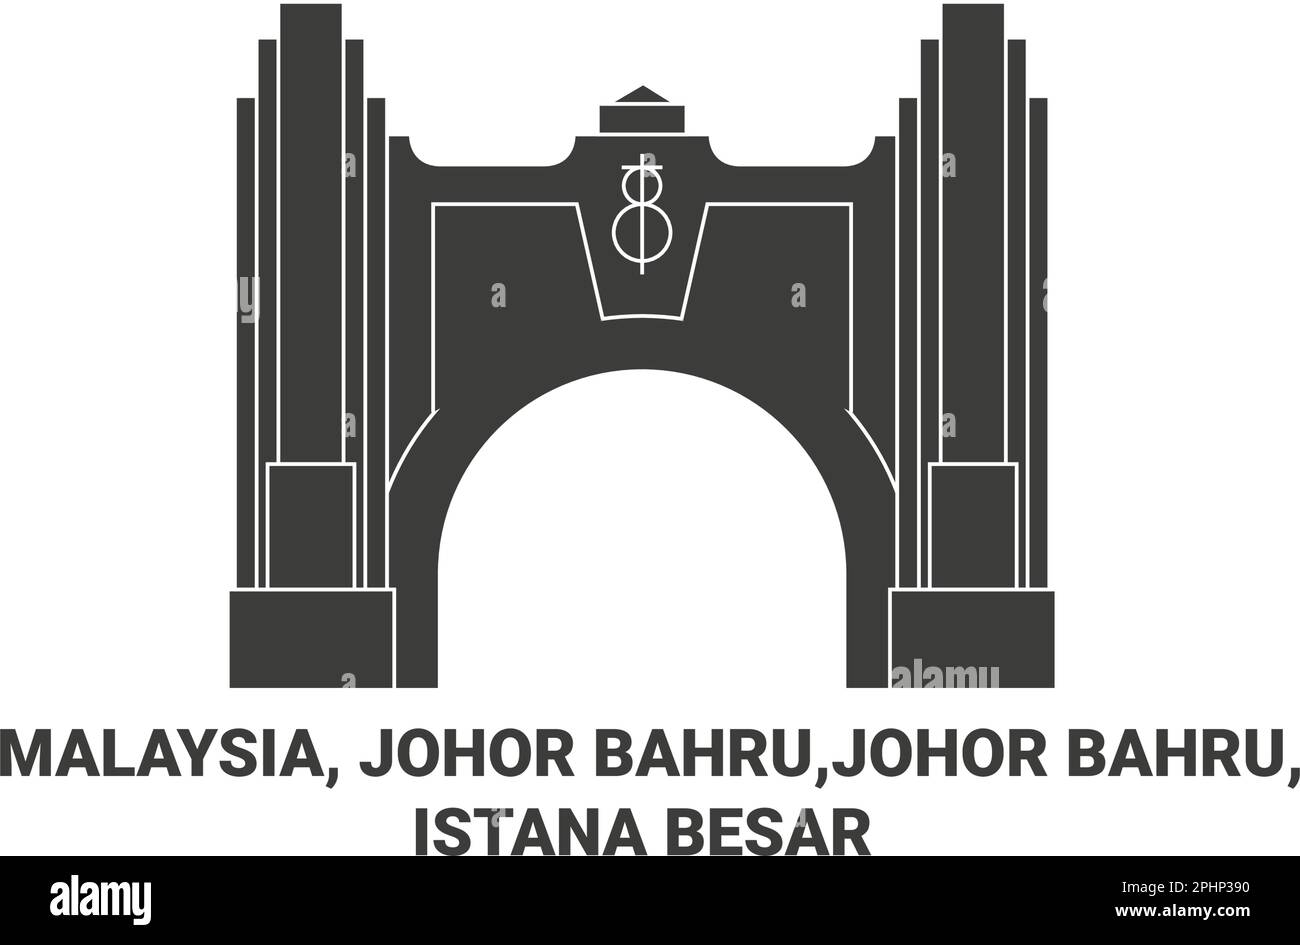 Malaysia, Johor Bahru,Johor Bahru, Istana Besar travel landmark vector ...